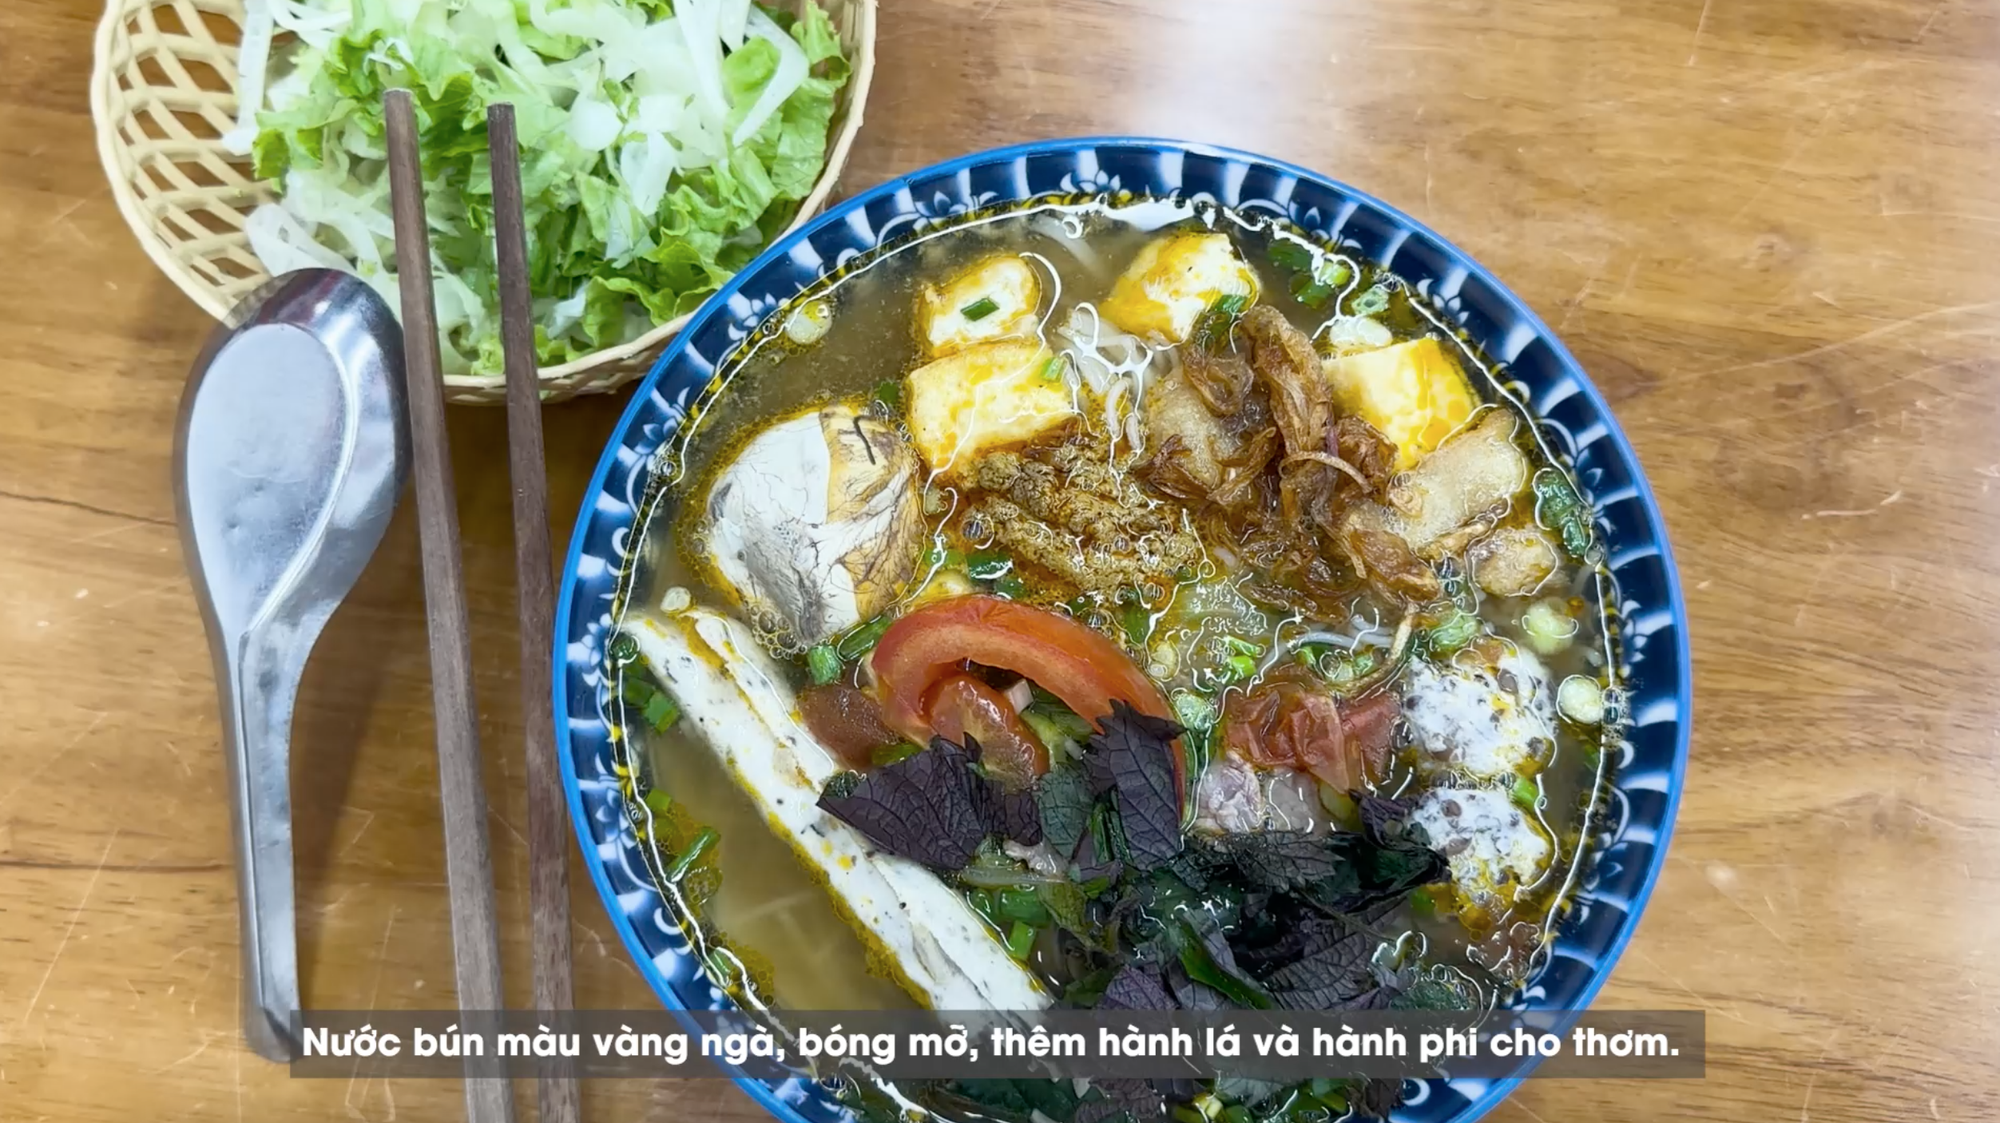 Ăn trứng vịt lộn thôi mà ở Hà Nội và Sài Gòn lại hoàn toàn khác biệt: Mỗi nơi đều có nét thú vị riêng mà ai xem xong cũng thích thú- Ảnh 4.